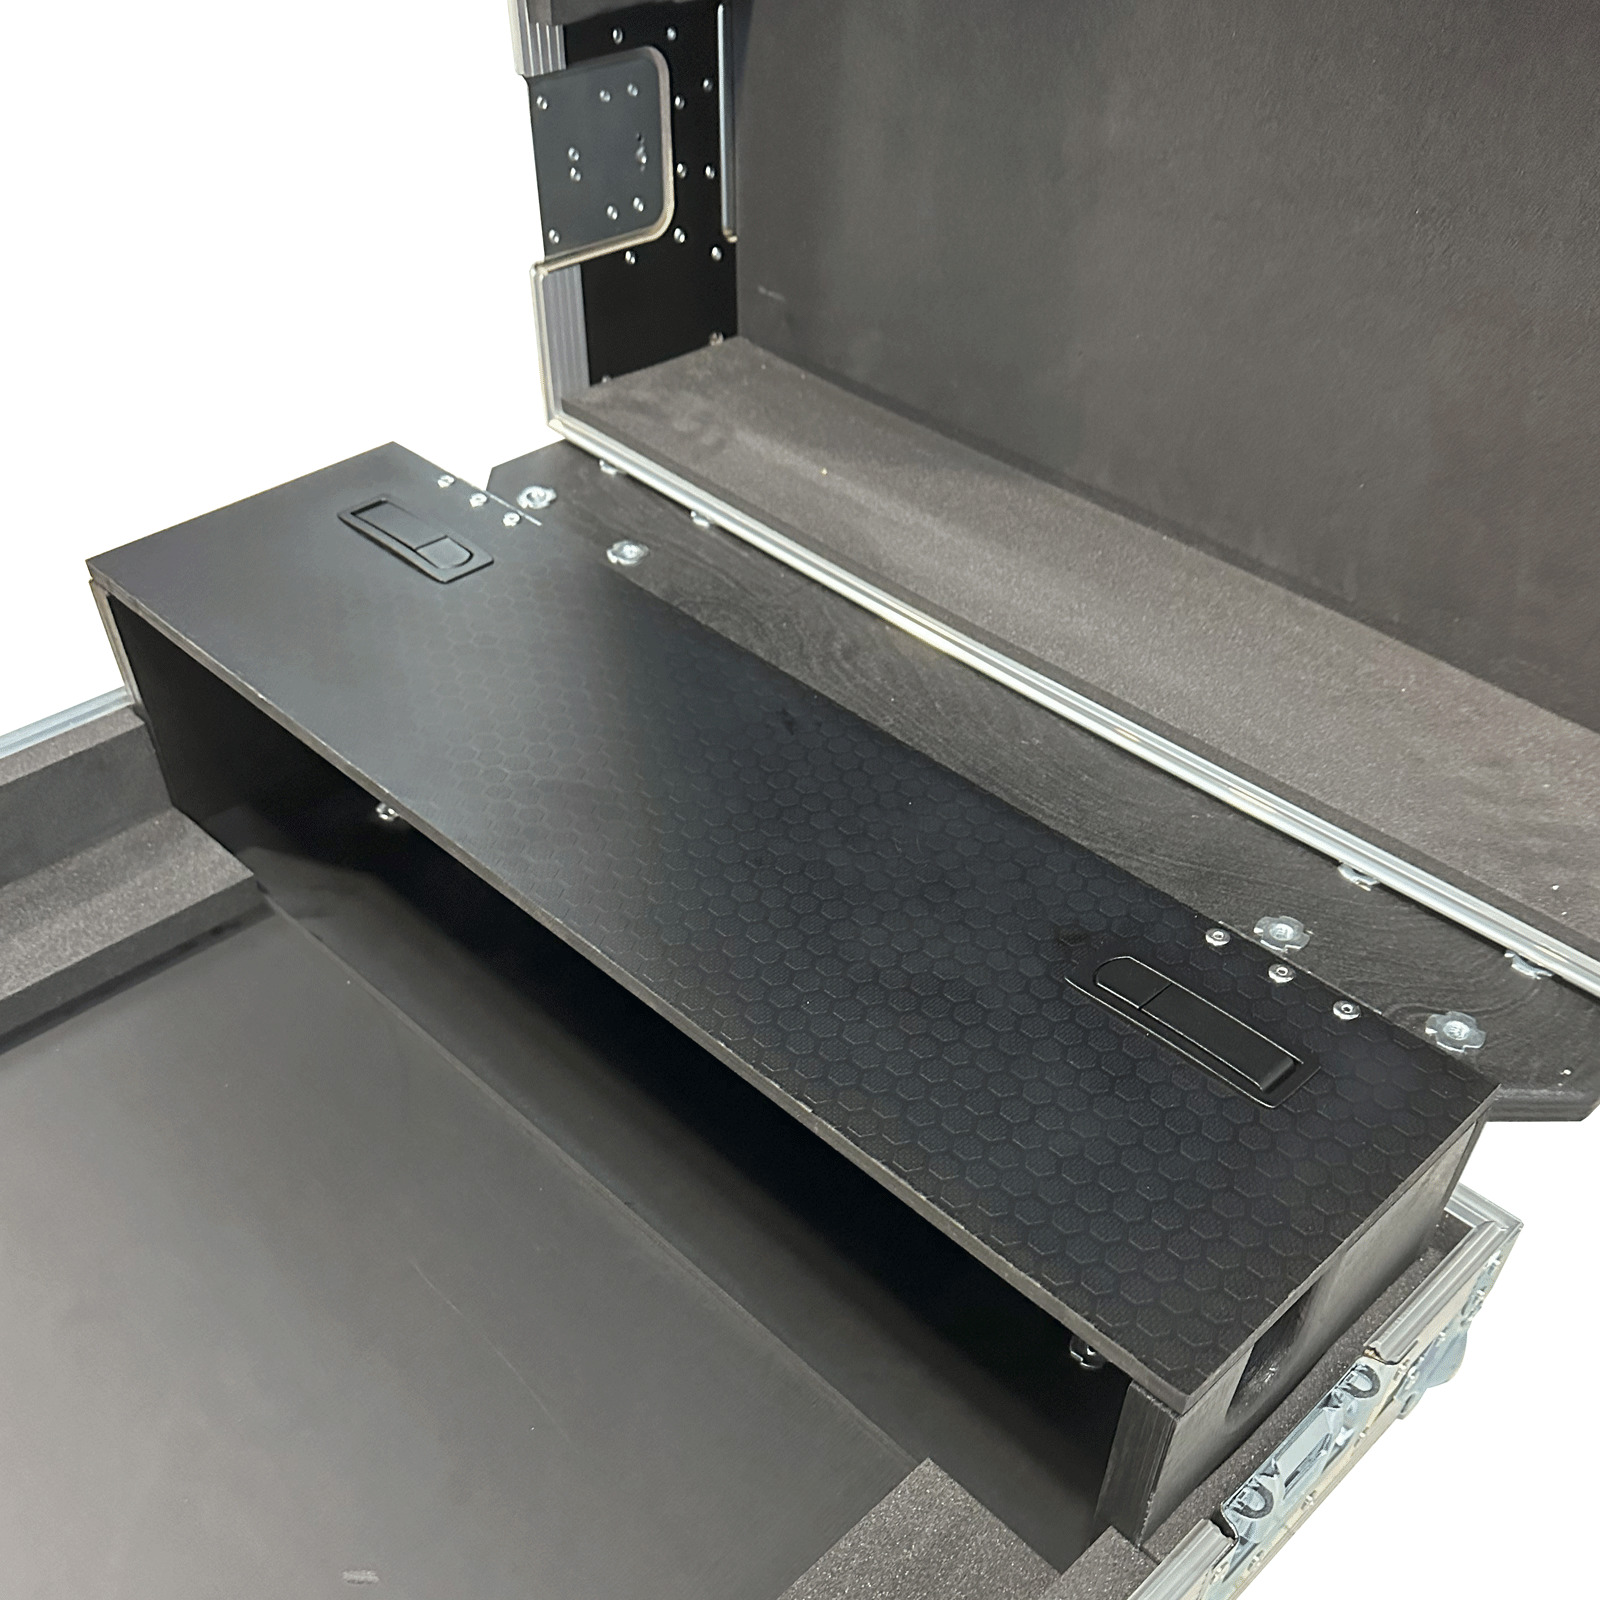 Allen + Heath SQ-6 Mixing Desk Flightcase With Dogbox + Castors 